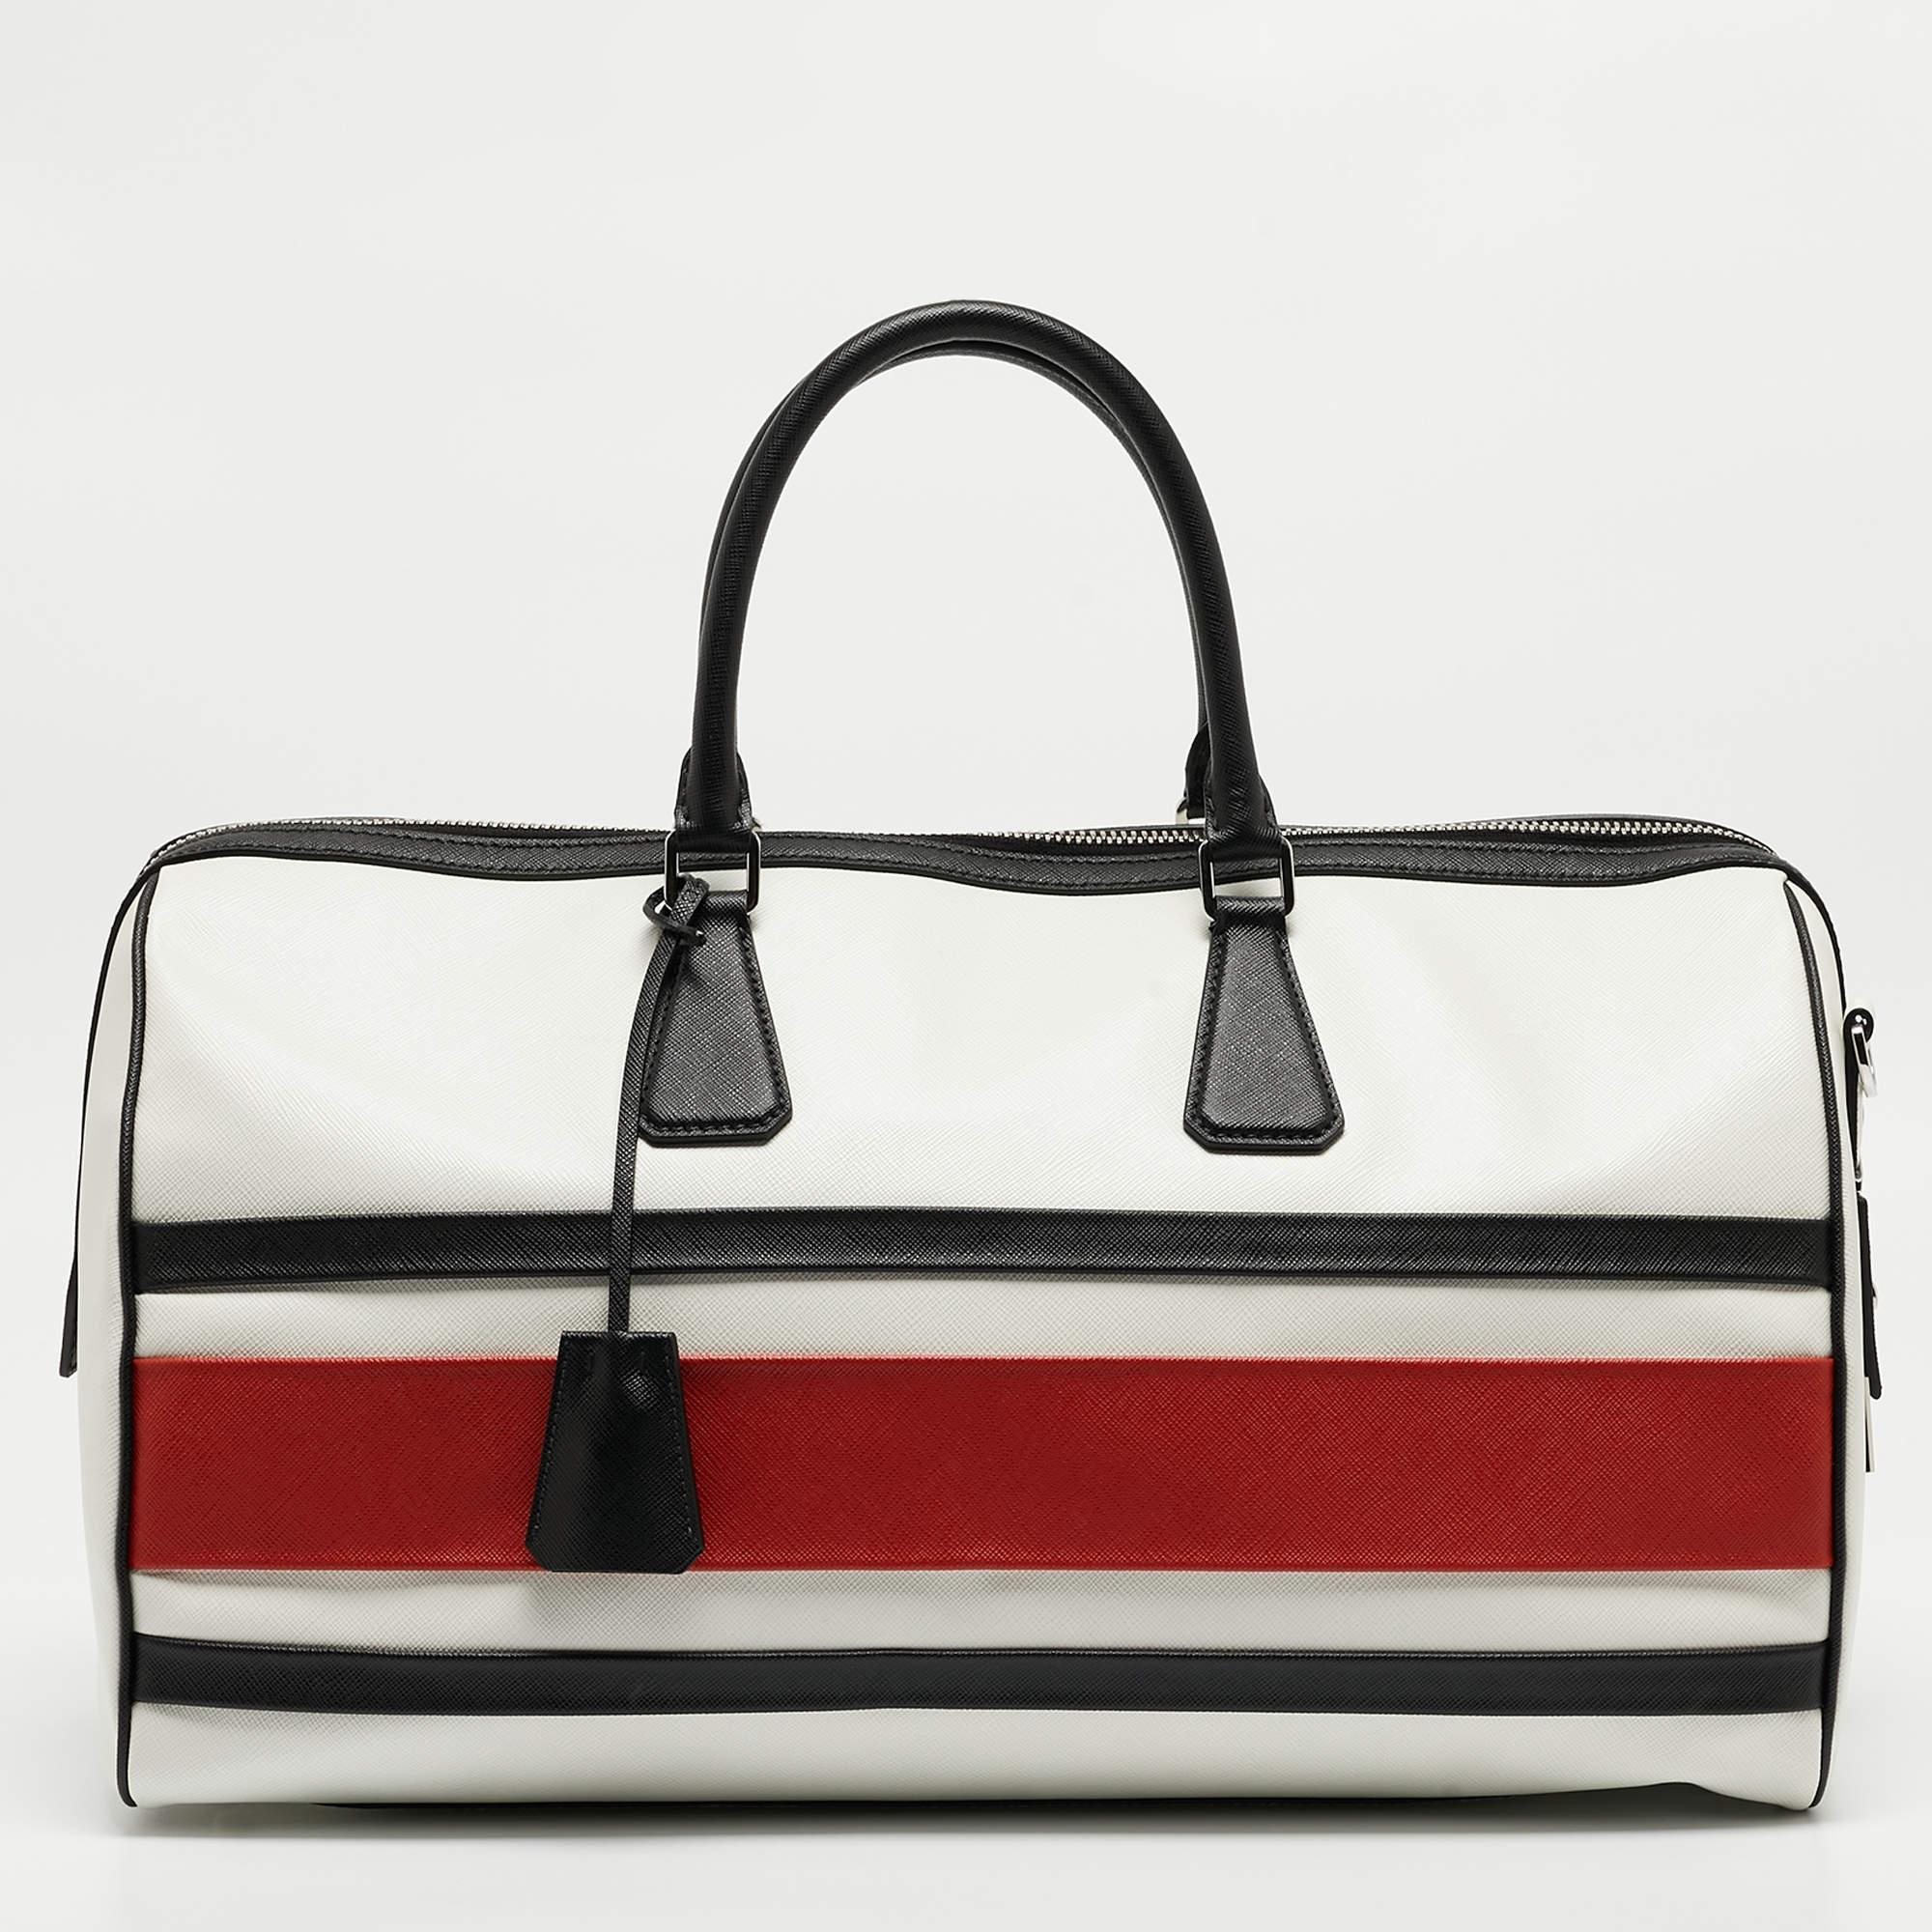 Prada Tricolor Saffiano Leather Travel Bag 4